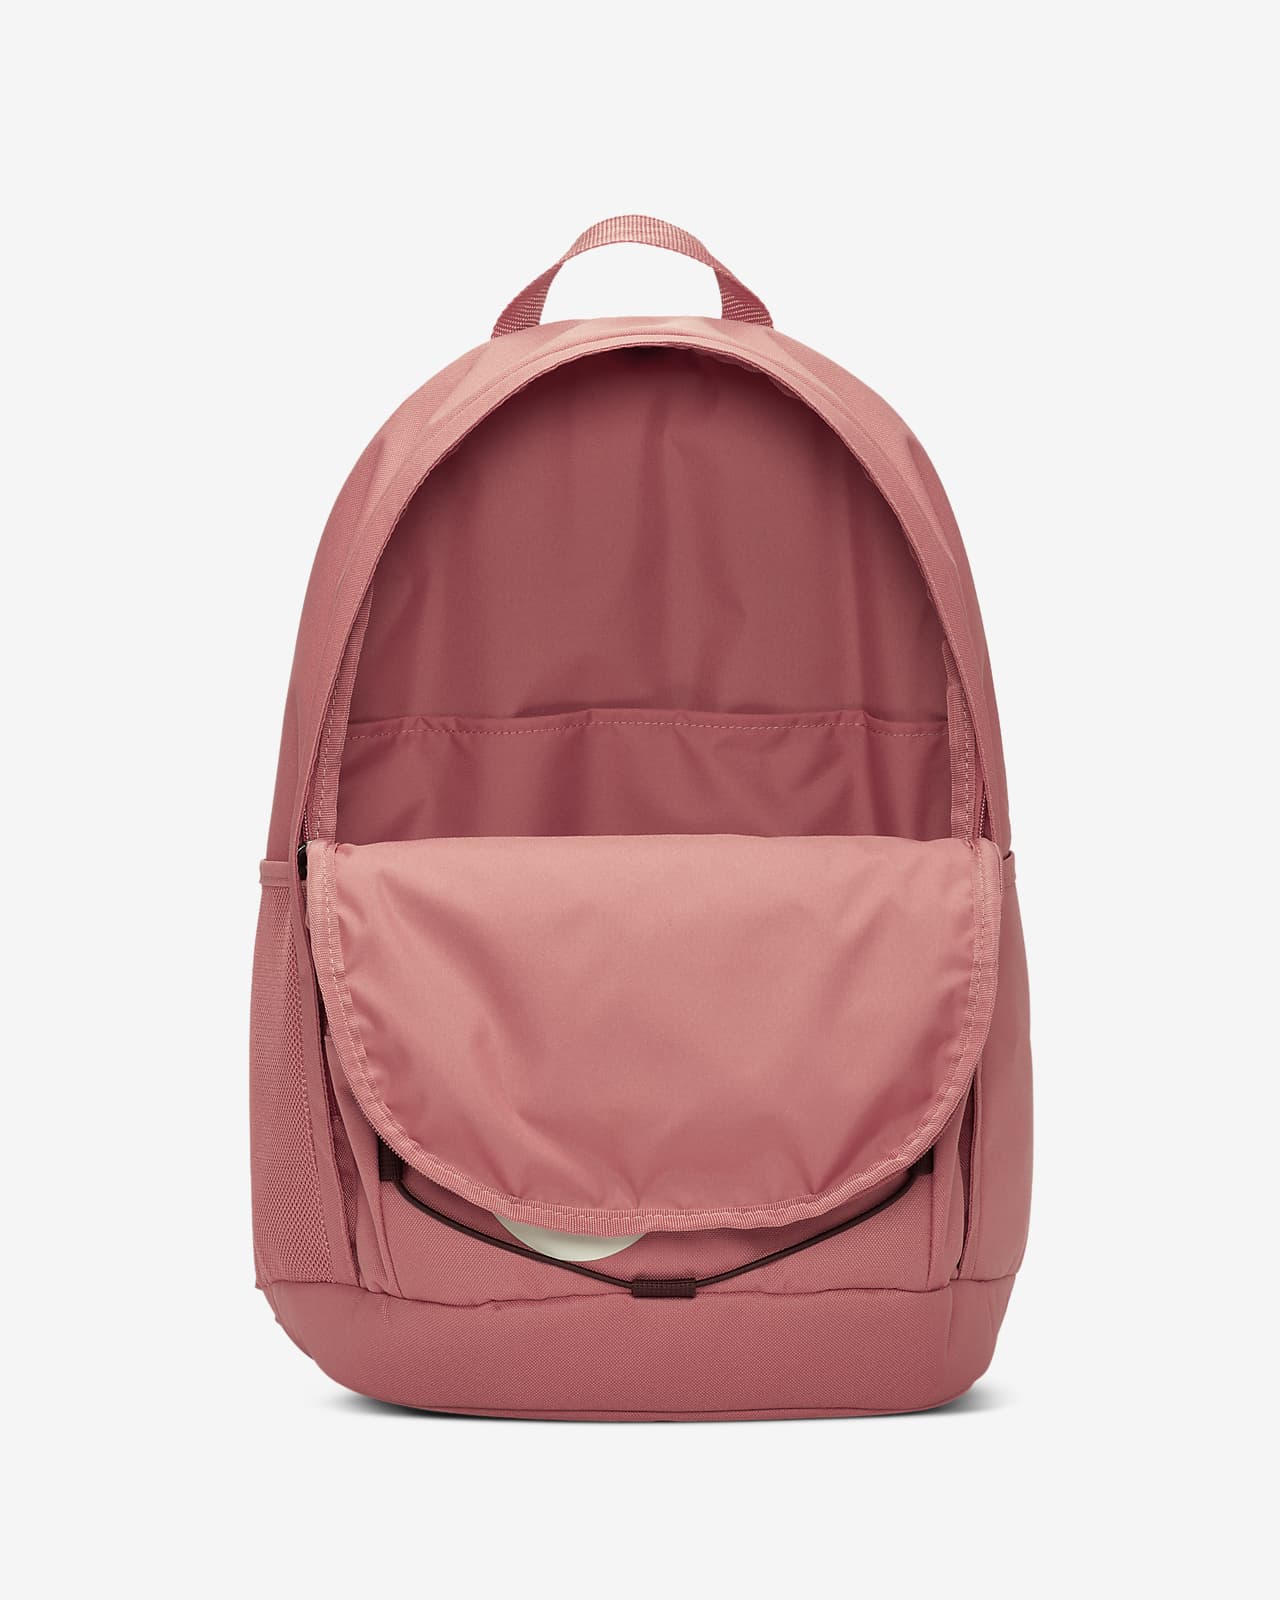 nike hayward backpack pink